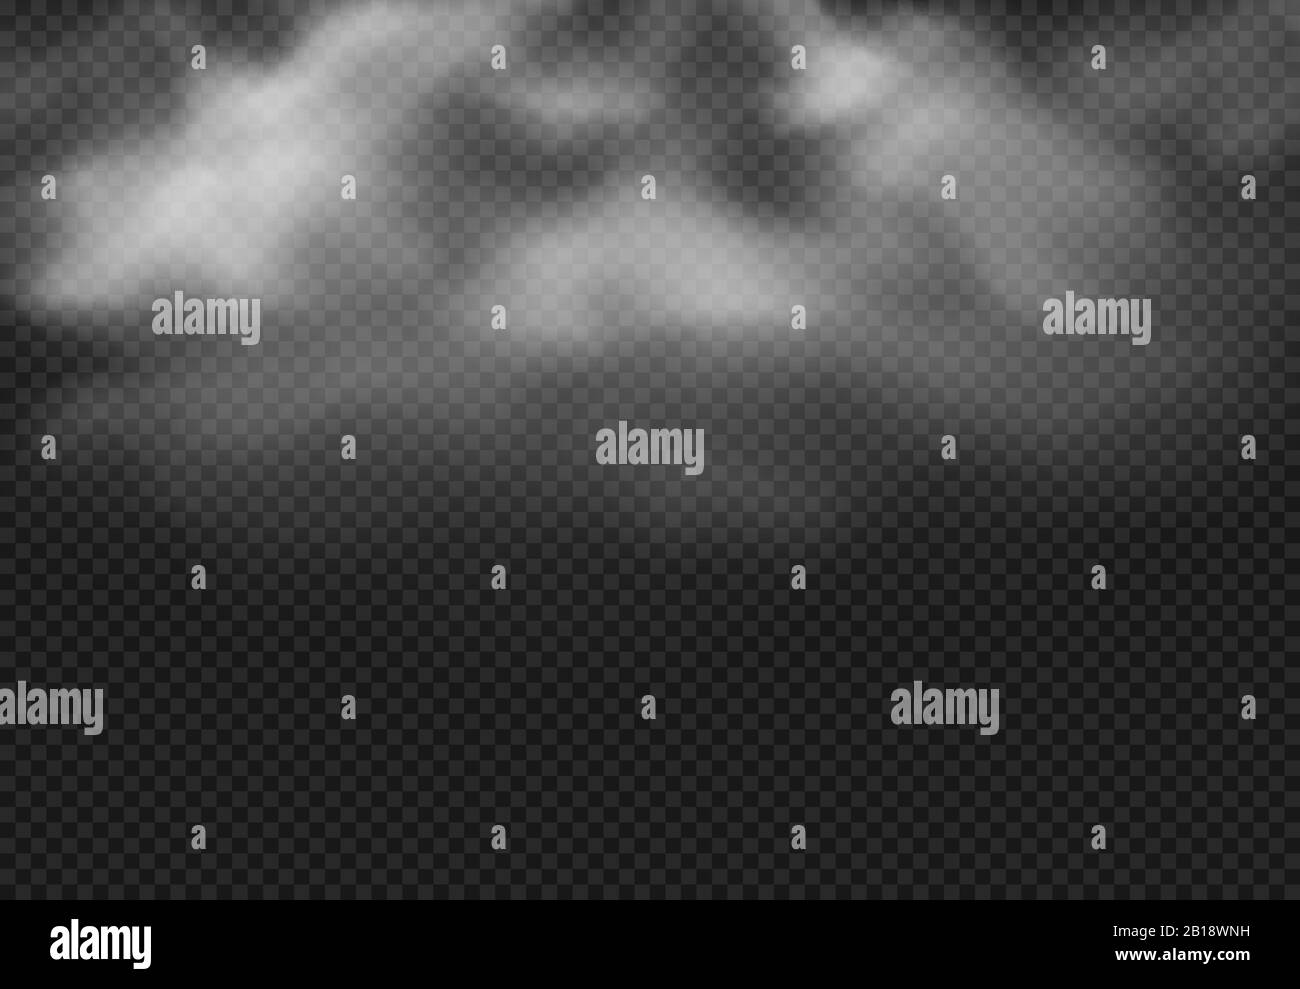 Nuvola di fumo. Nubi di nebbia, nebbia fumosa e realistico effetto nuvoloso immagine vettoriale isolata Illustrazione Vettoriale